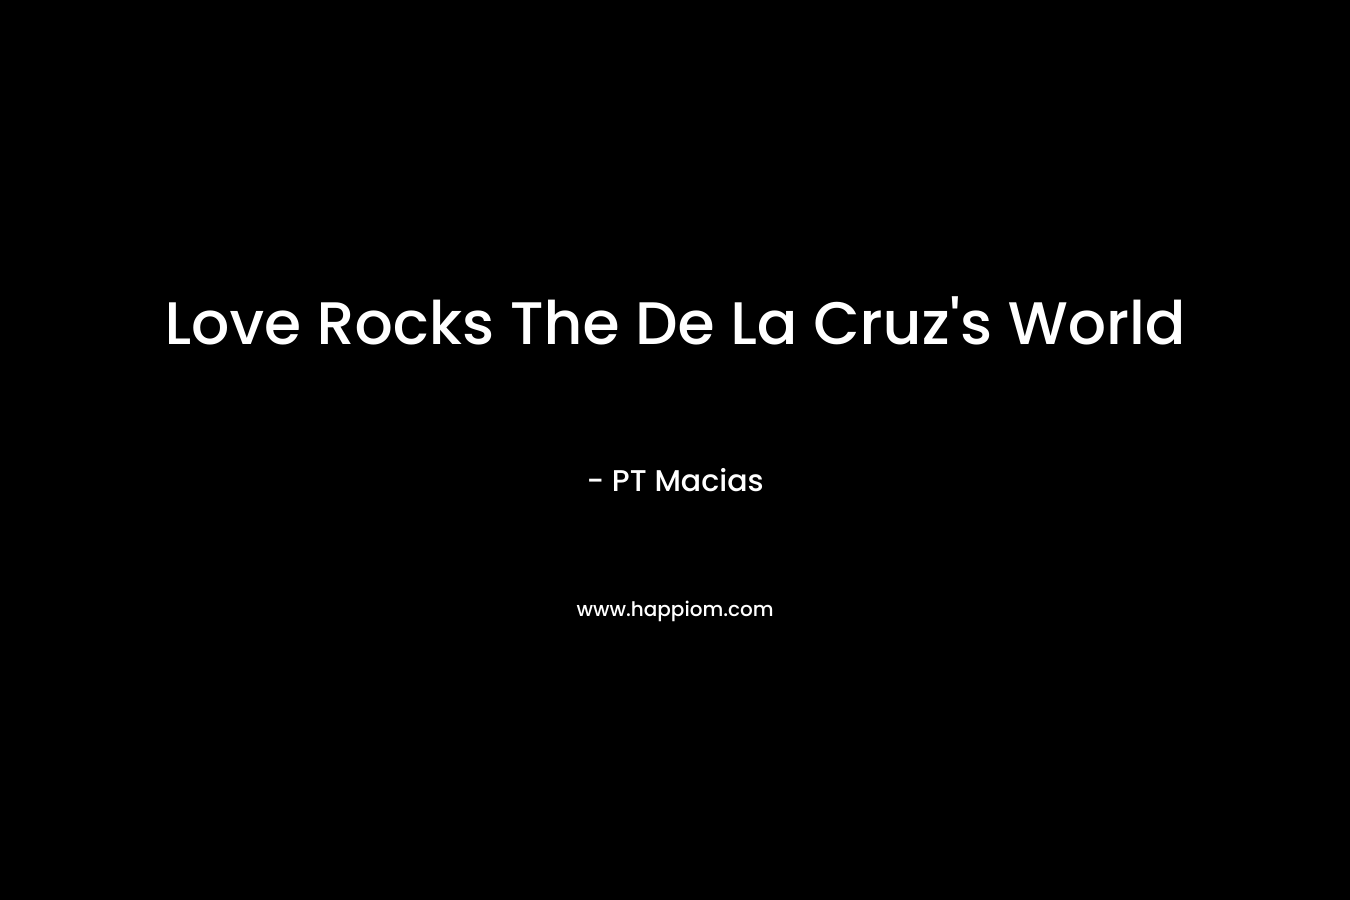 Love Rocks The De La Cruz's World